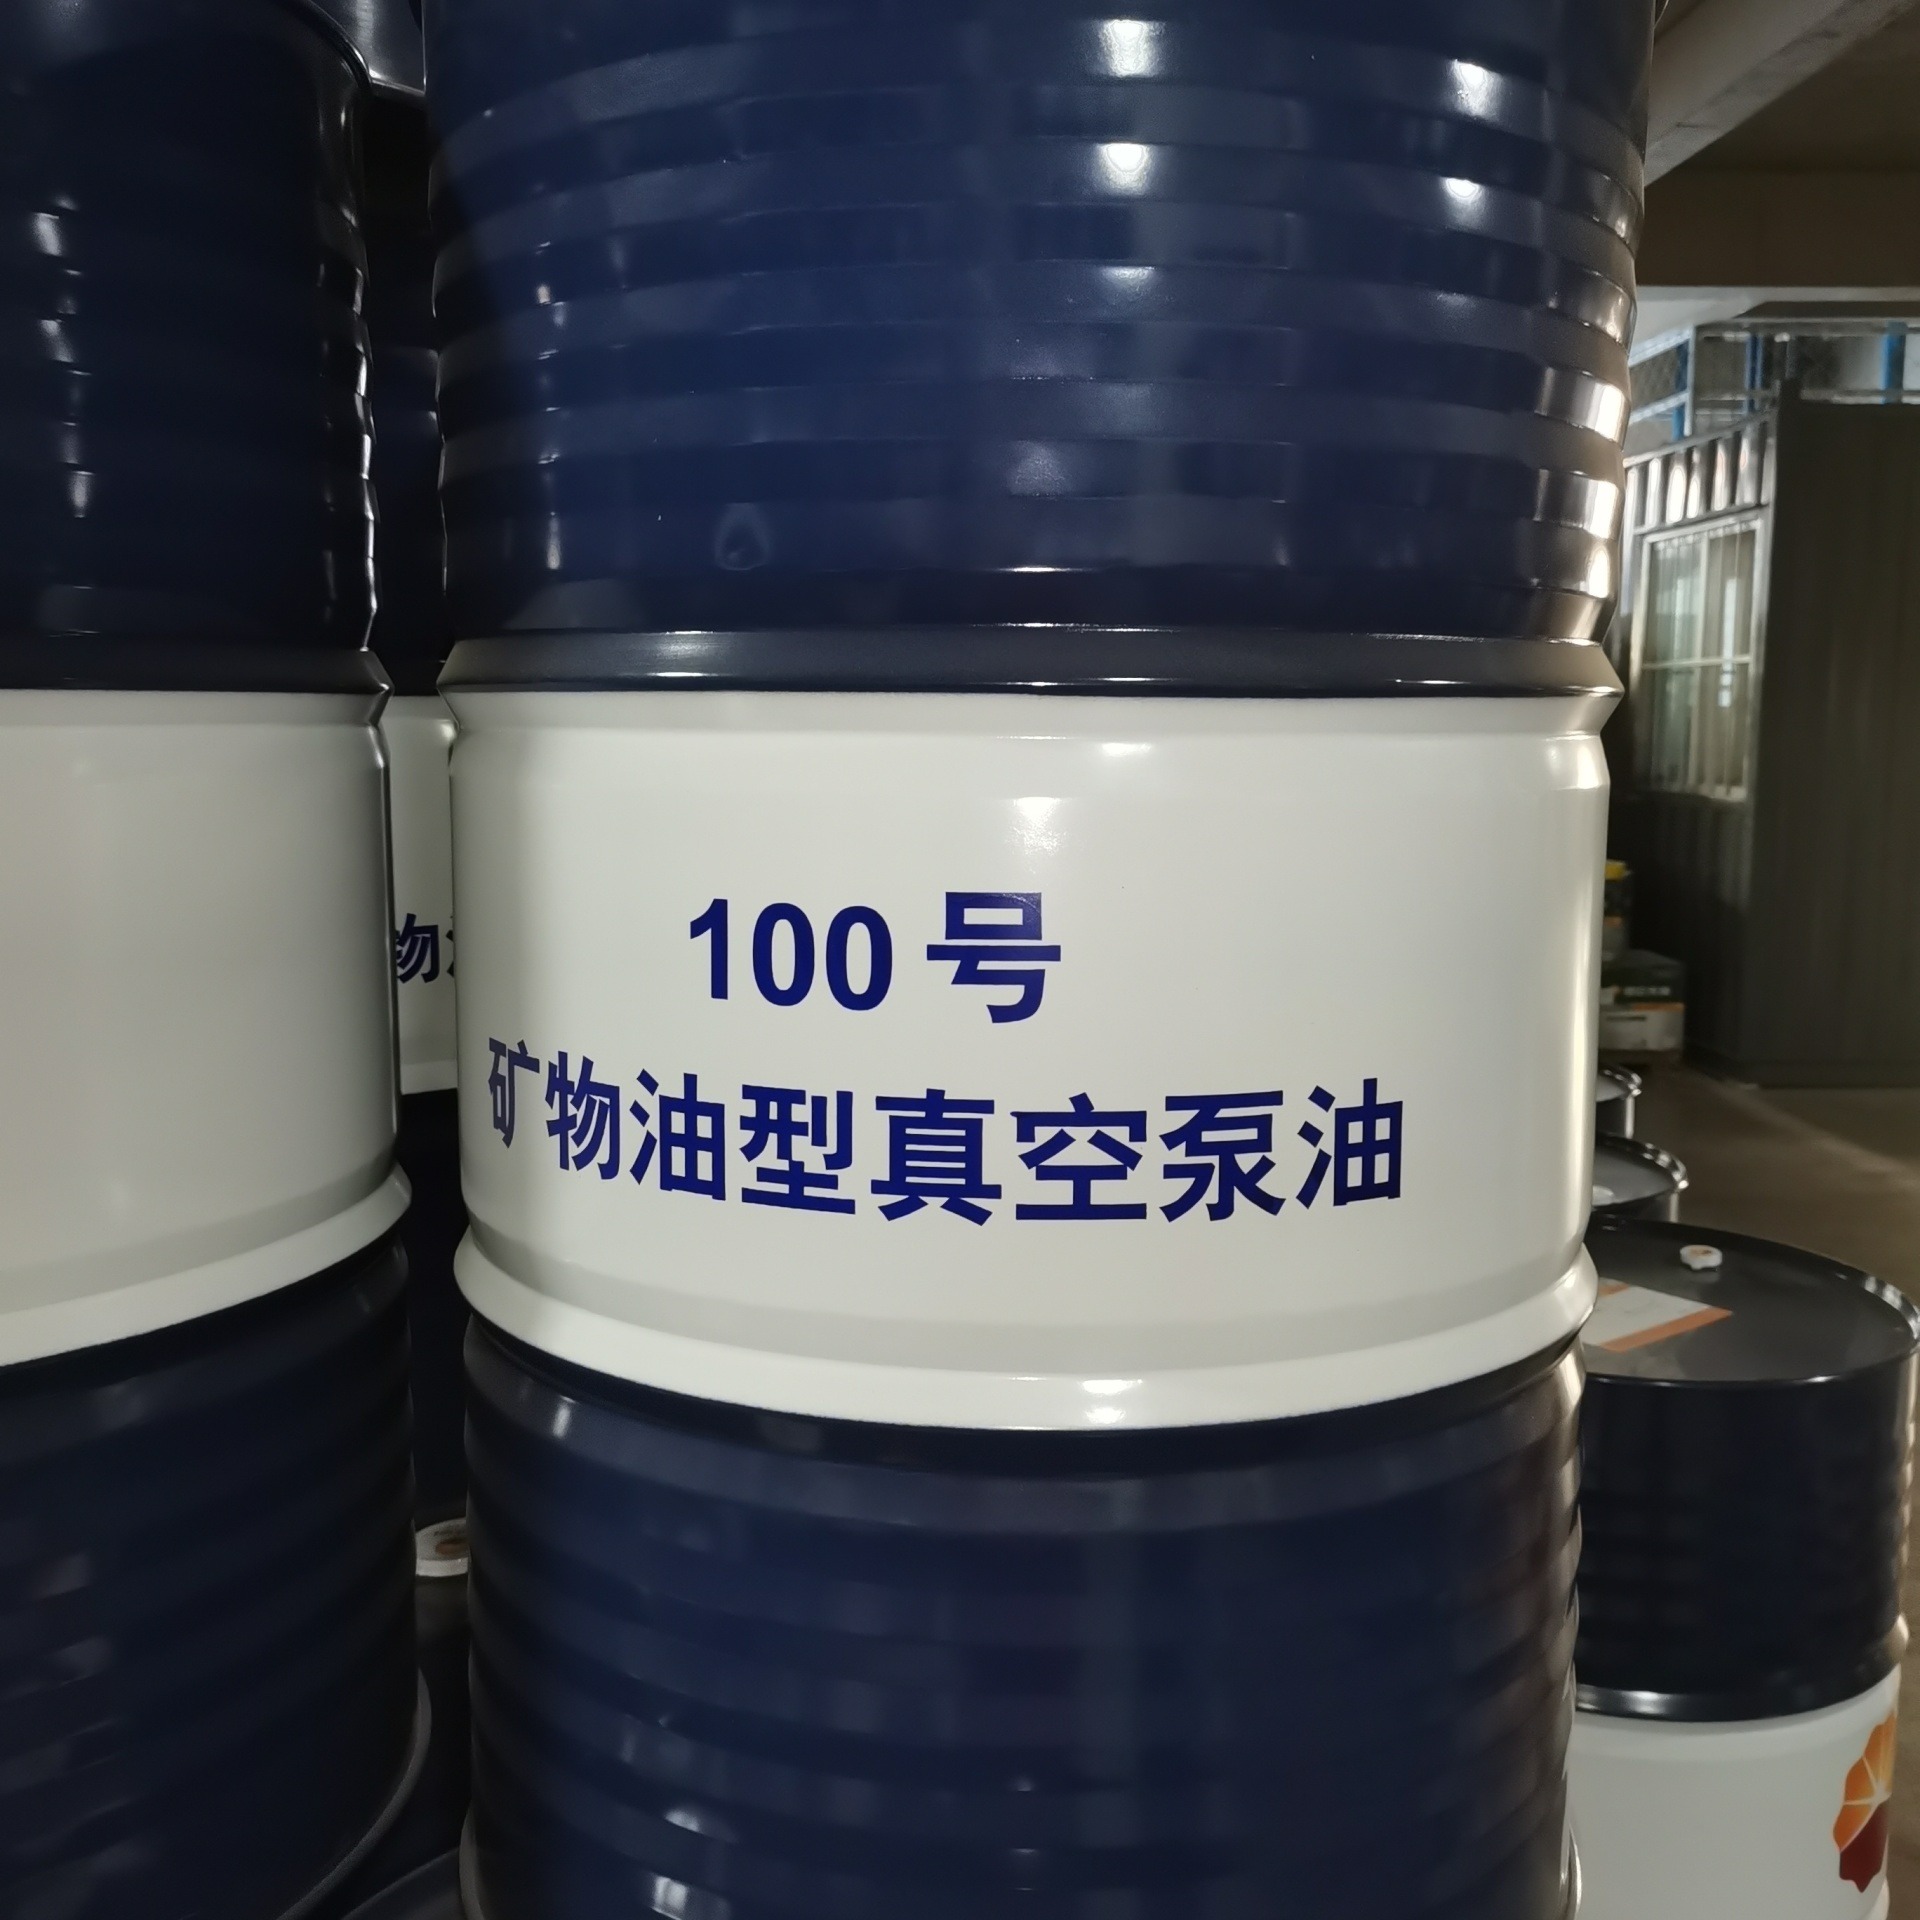 昆仑润滑油总代理 现货供应昆仑真空泵油DVA100 昆仑100号矿物油型真空泵油 适用于各类机械真空泵的密封与润滑